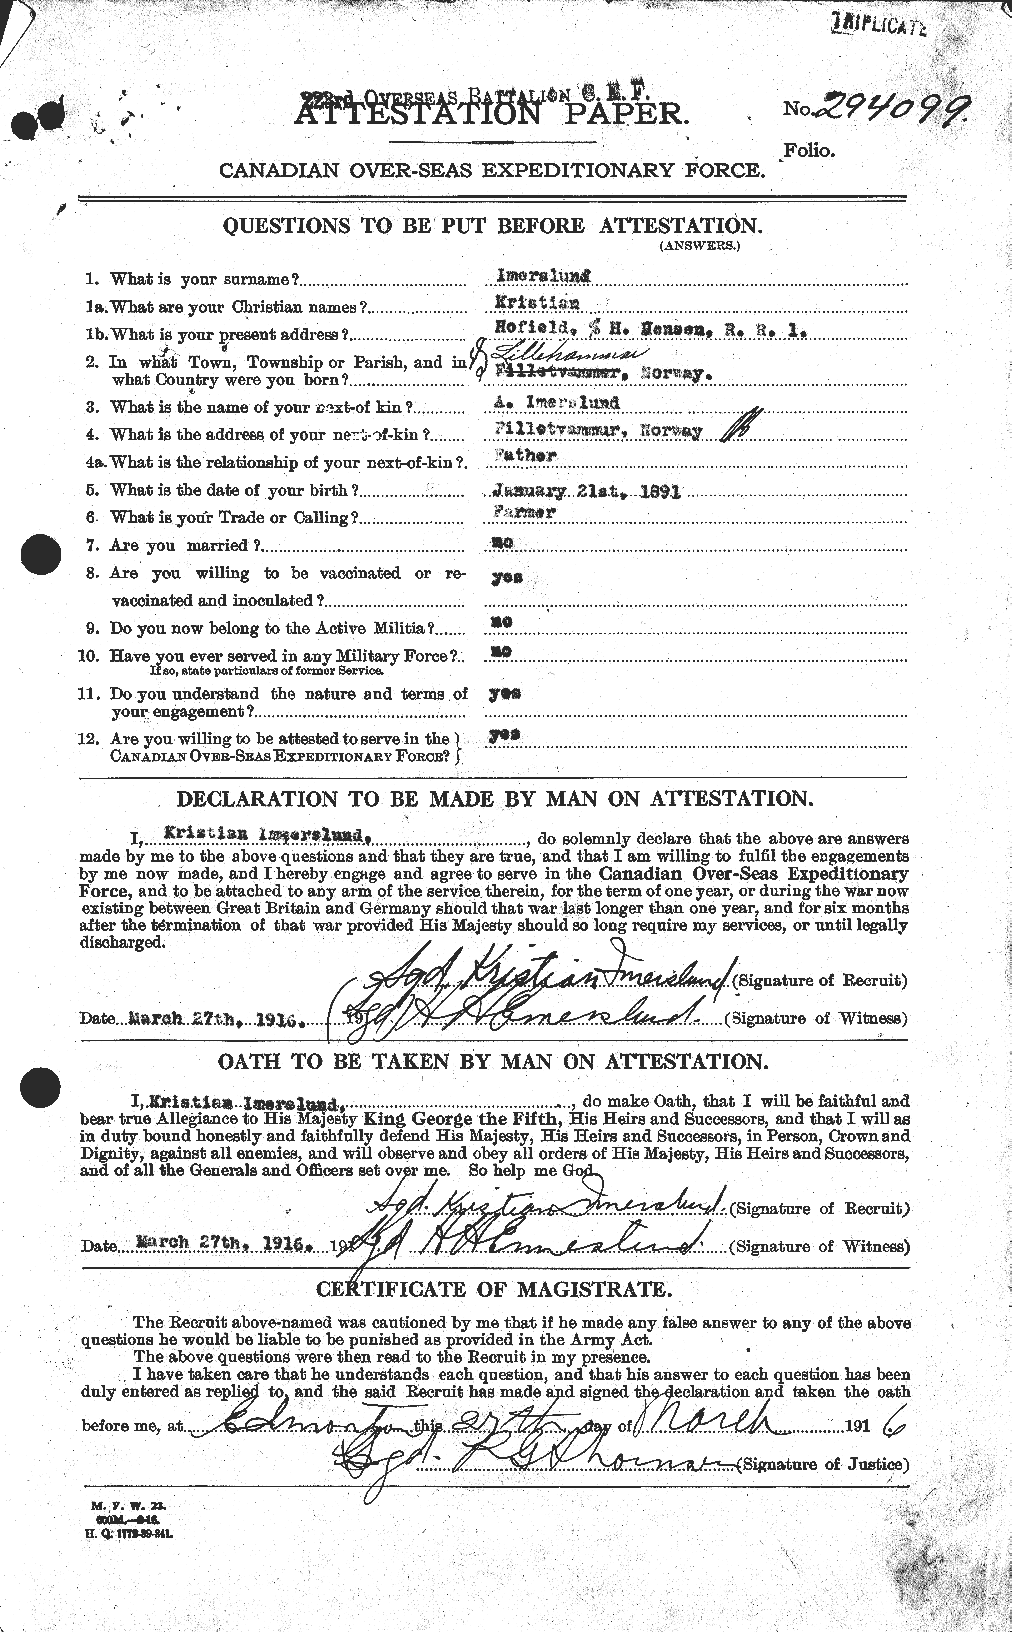 Dossiers du Personnel de la Première Guerre mondiale - CEC 413359a